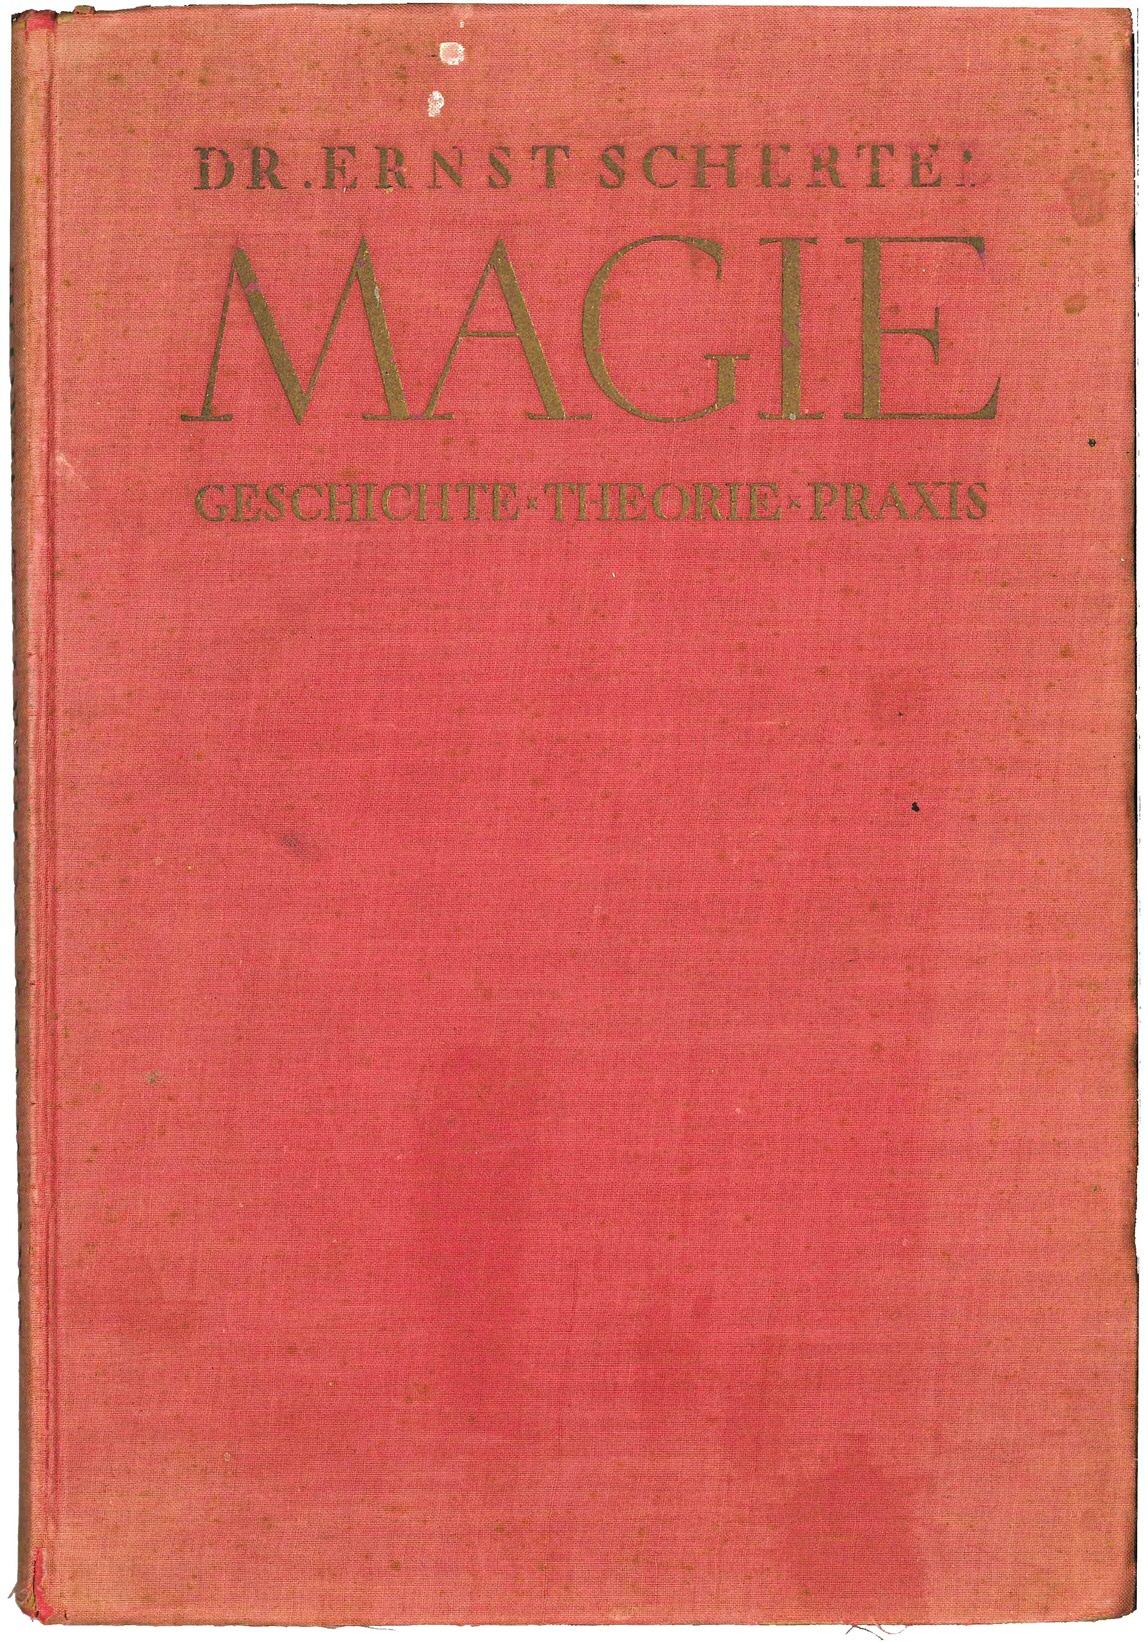 14. Ernst Schertel, Magie (1923)